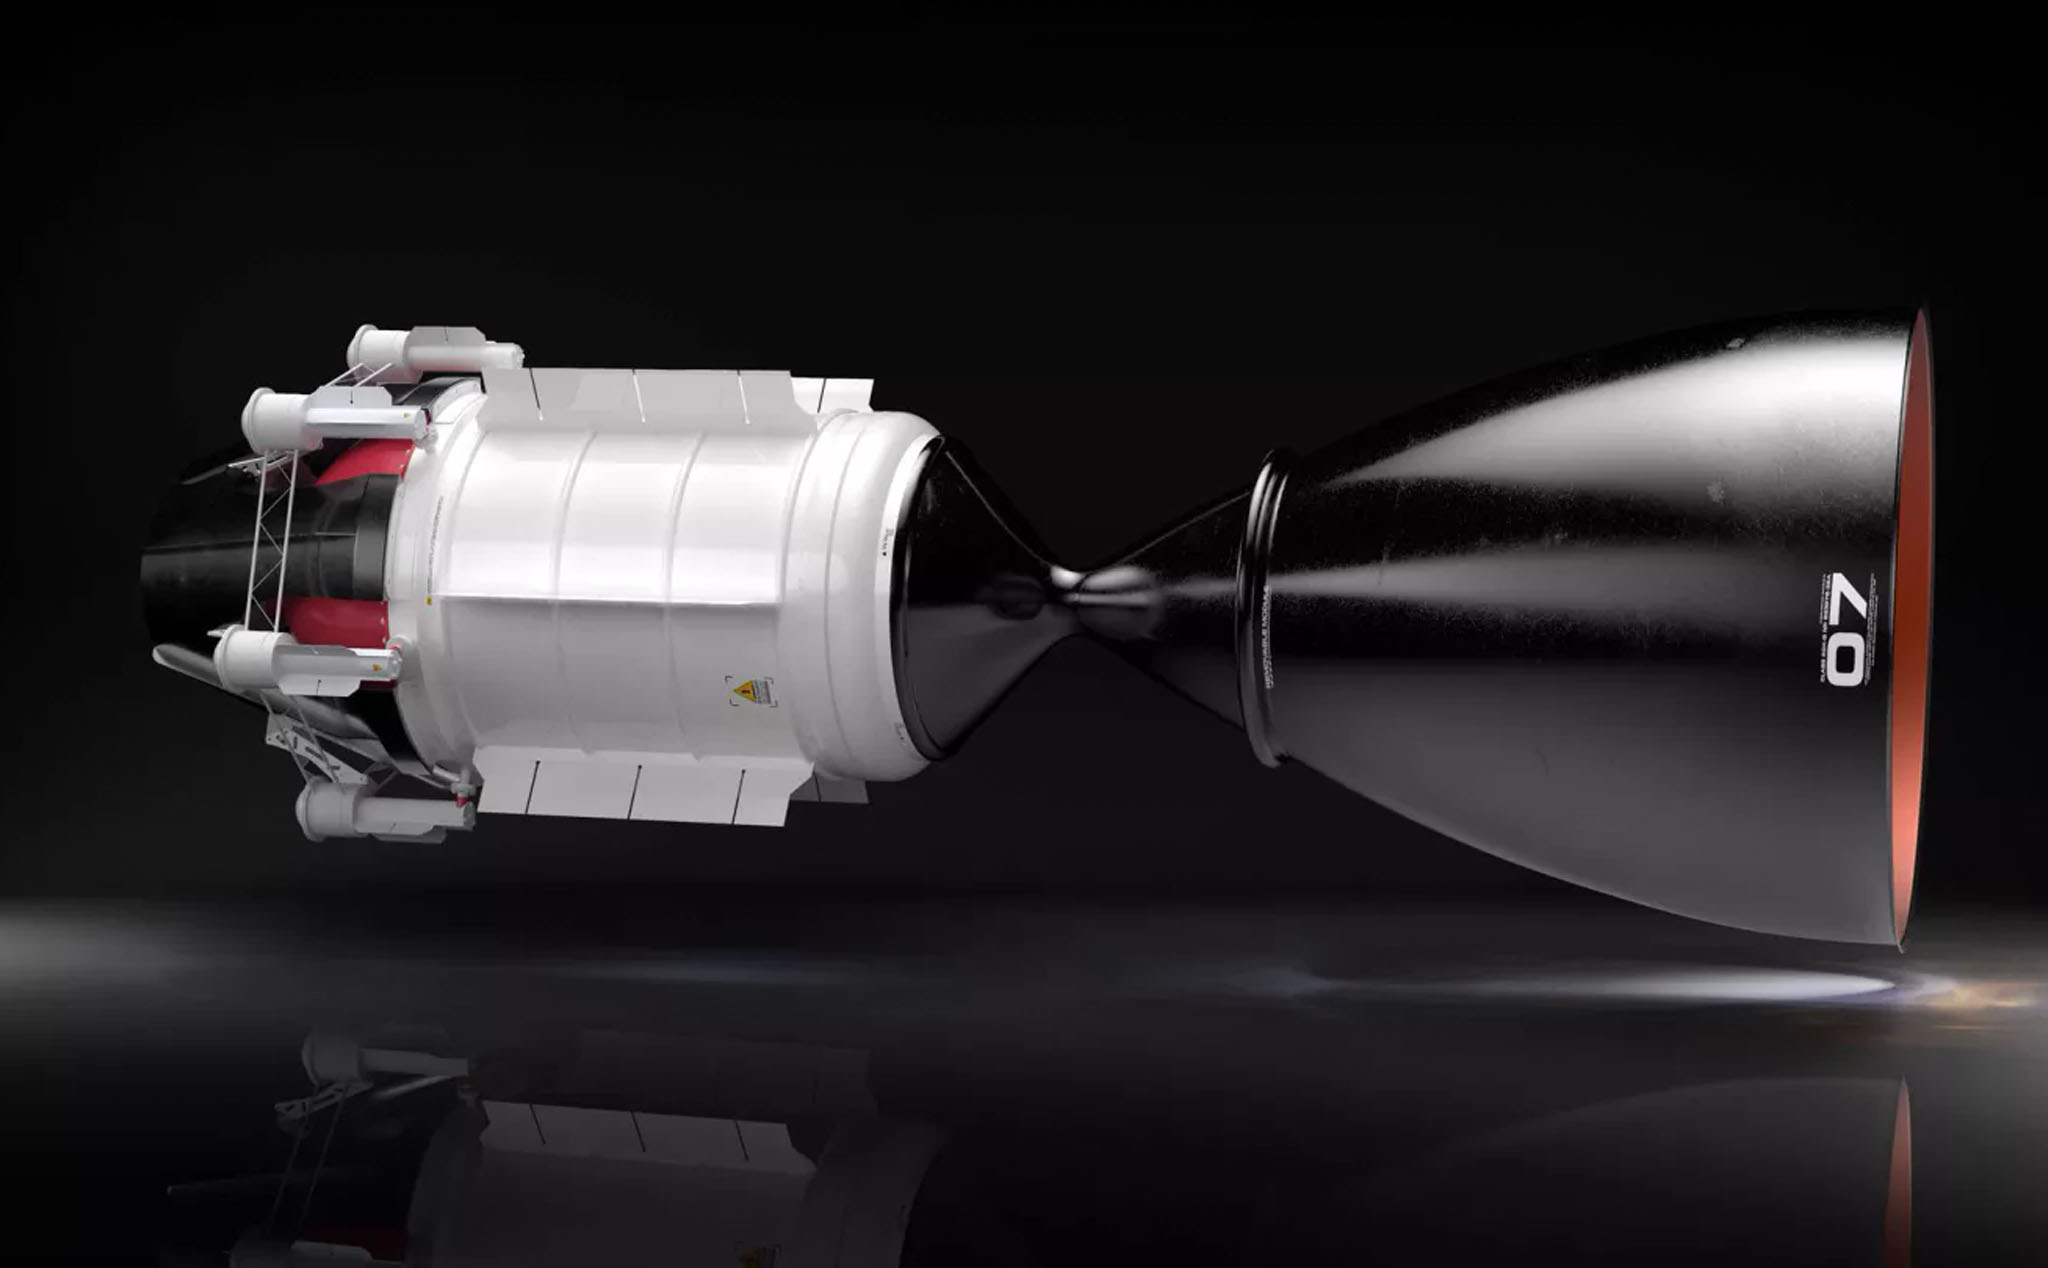 Thiết kế động cơ đẩy hạt nhân cho tàu vũ trụ, bay từ trái đất lên sao Hỏa chỉ mất 3 tháng